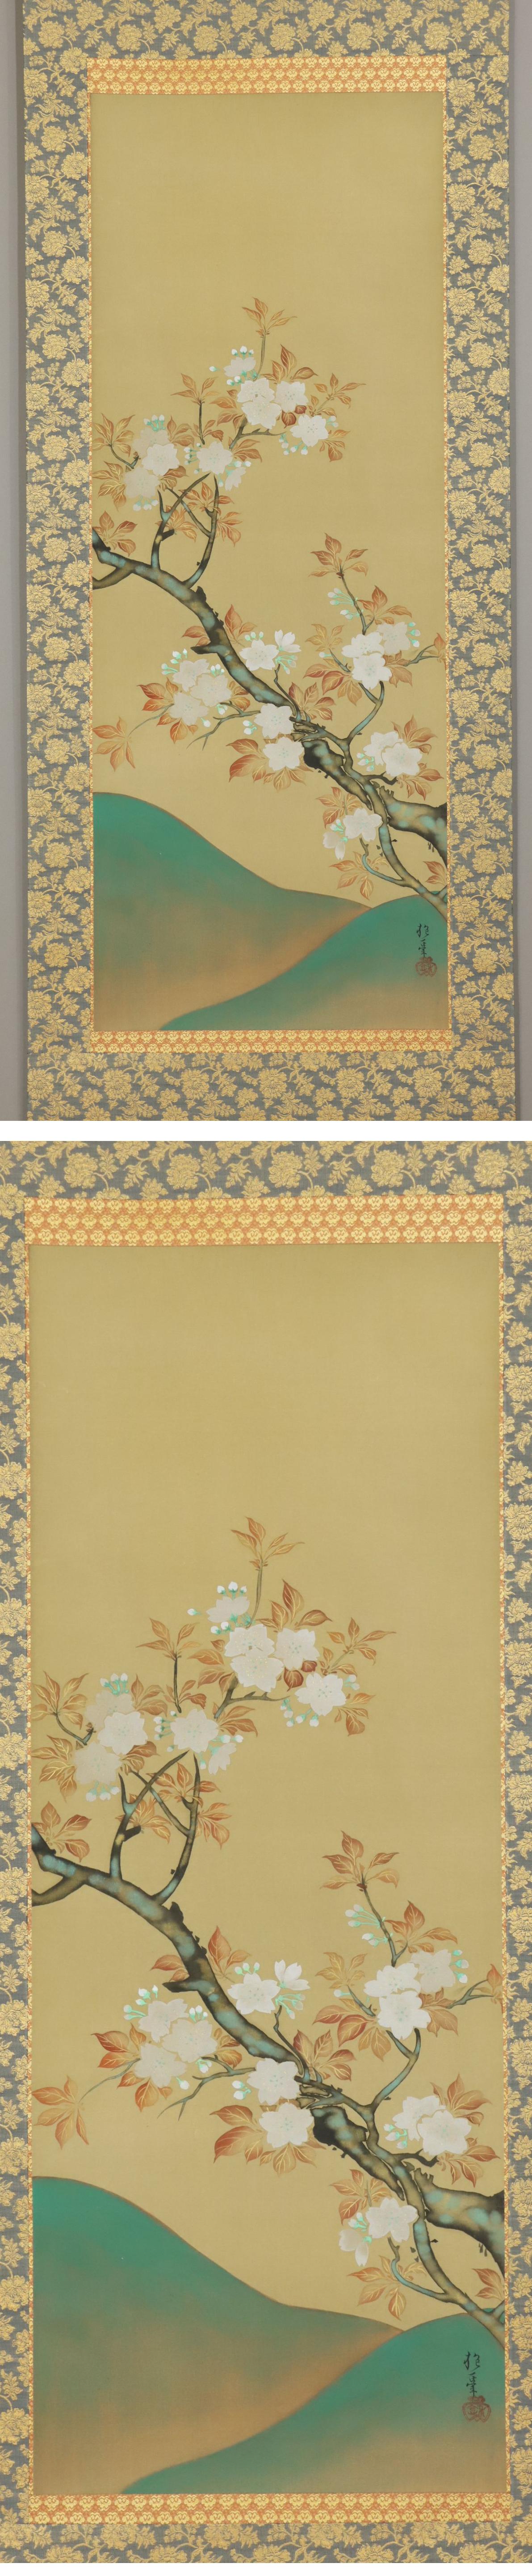 超激得豊富な◆酒井抱一◆山桜◆日本画◆手彩色◆二重箱◆絹本◆掛軸◆m561 花鳥、鳥獣